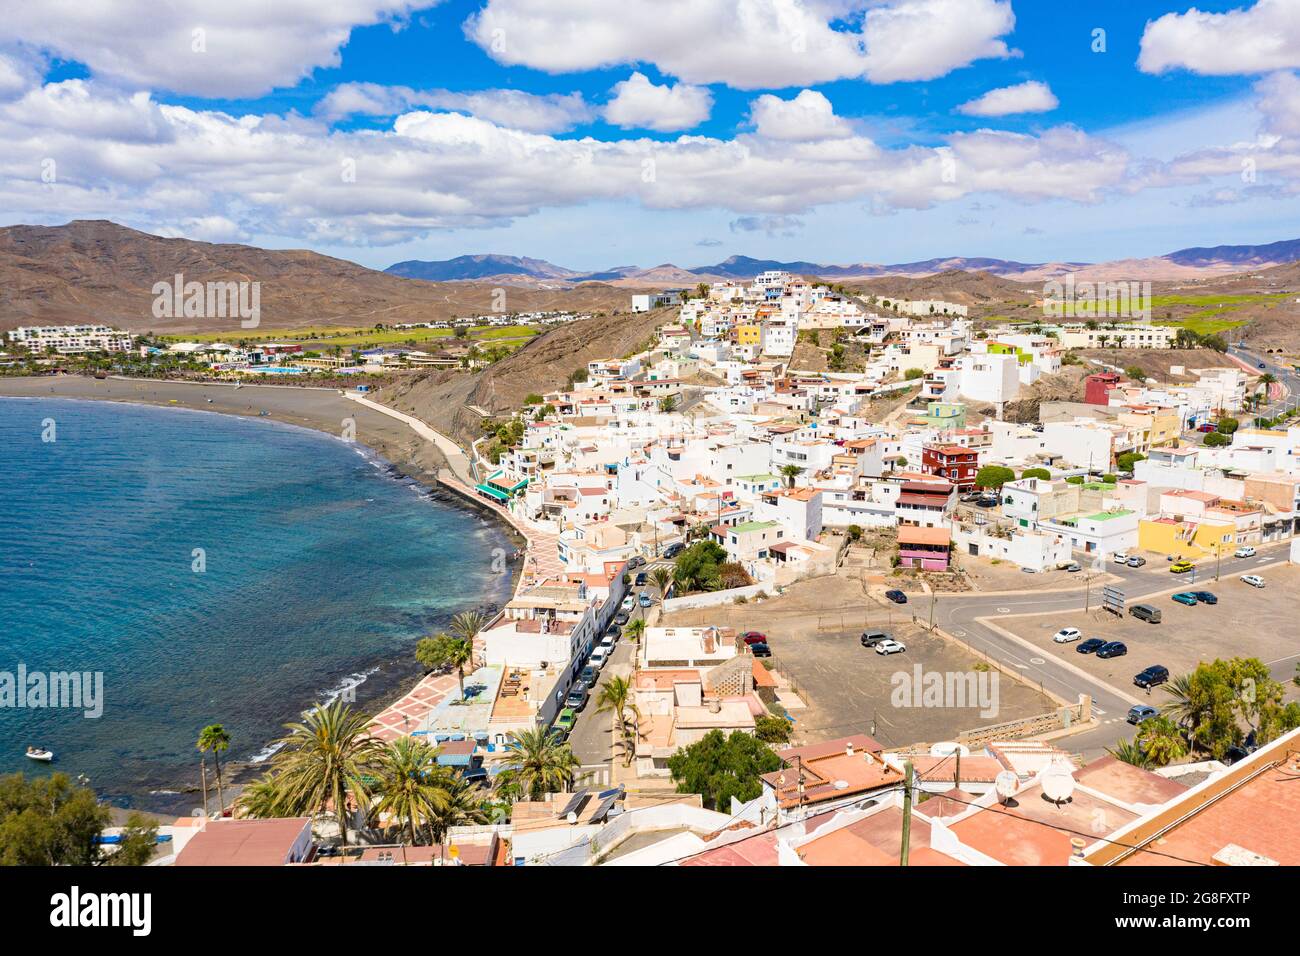 Vue panoramique de la ville balnéaire de Las Playitas, Fuerteventura, îles Canaries, Espagne, Atlantique, Europe Banque D'Images